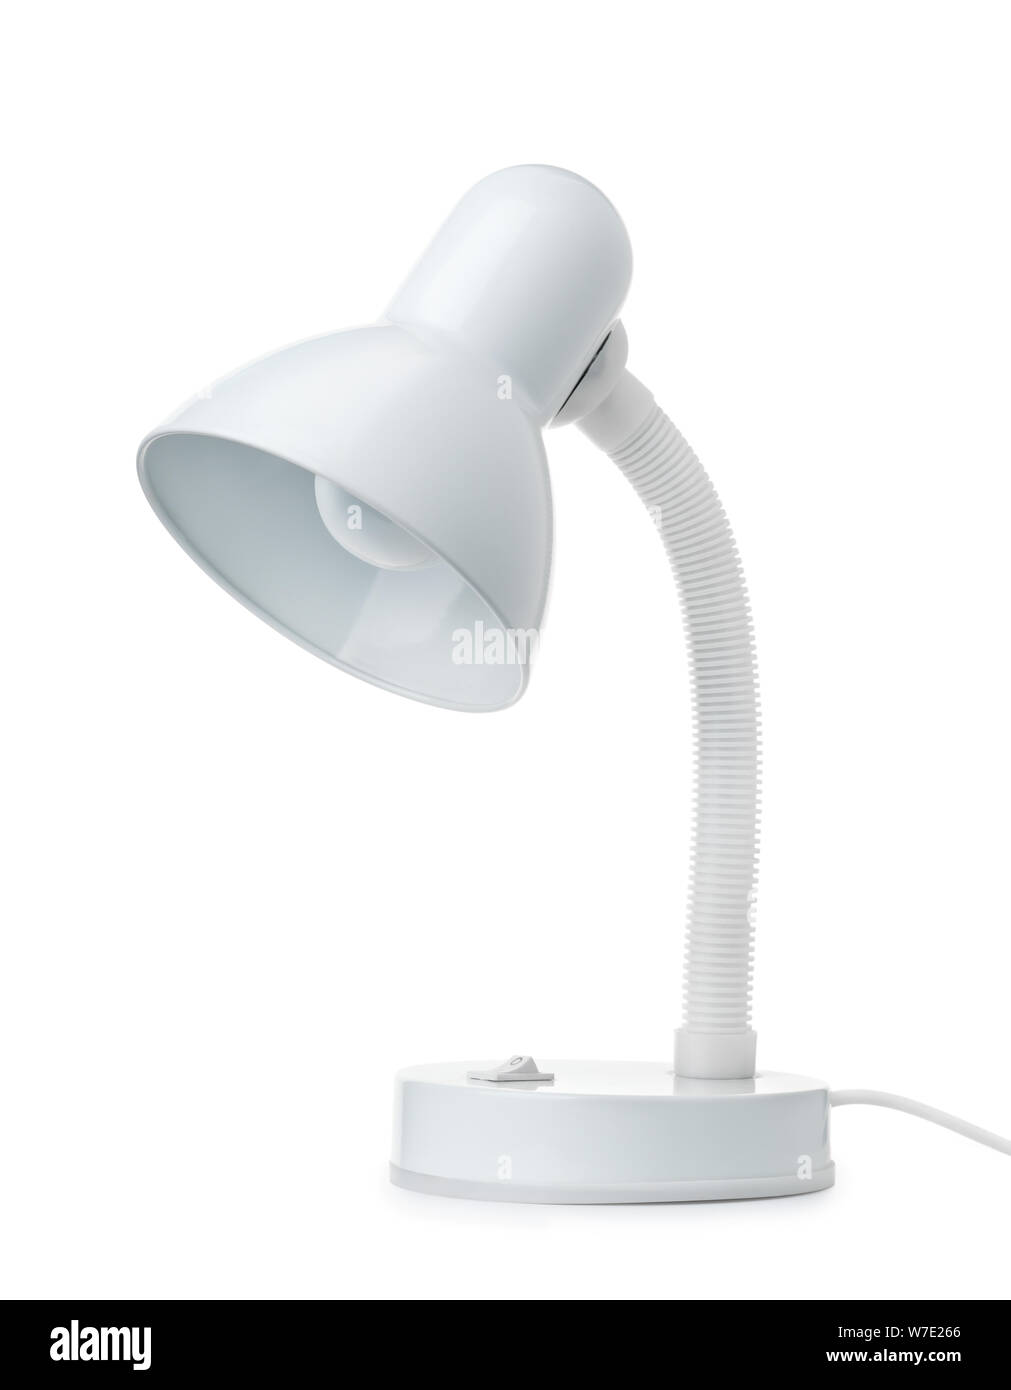 Lámpara de escritorio blanco clásico aislado en blanco Foto de stock